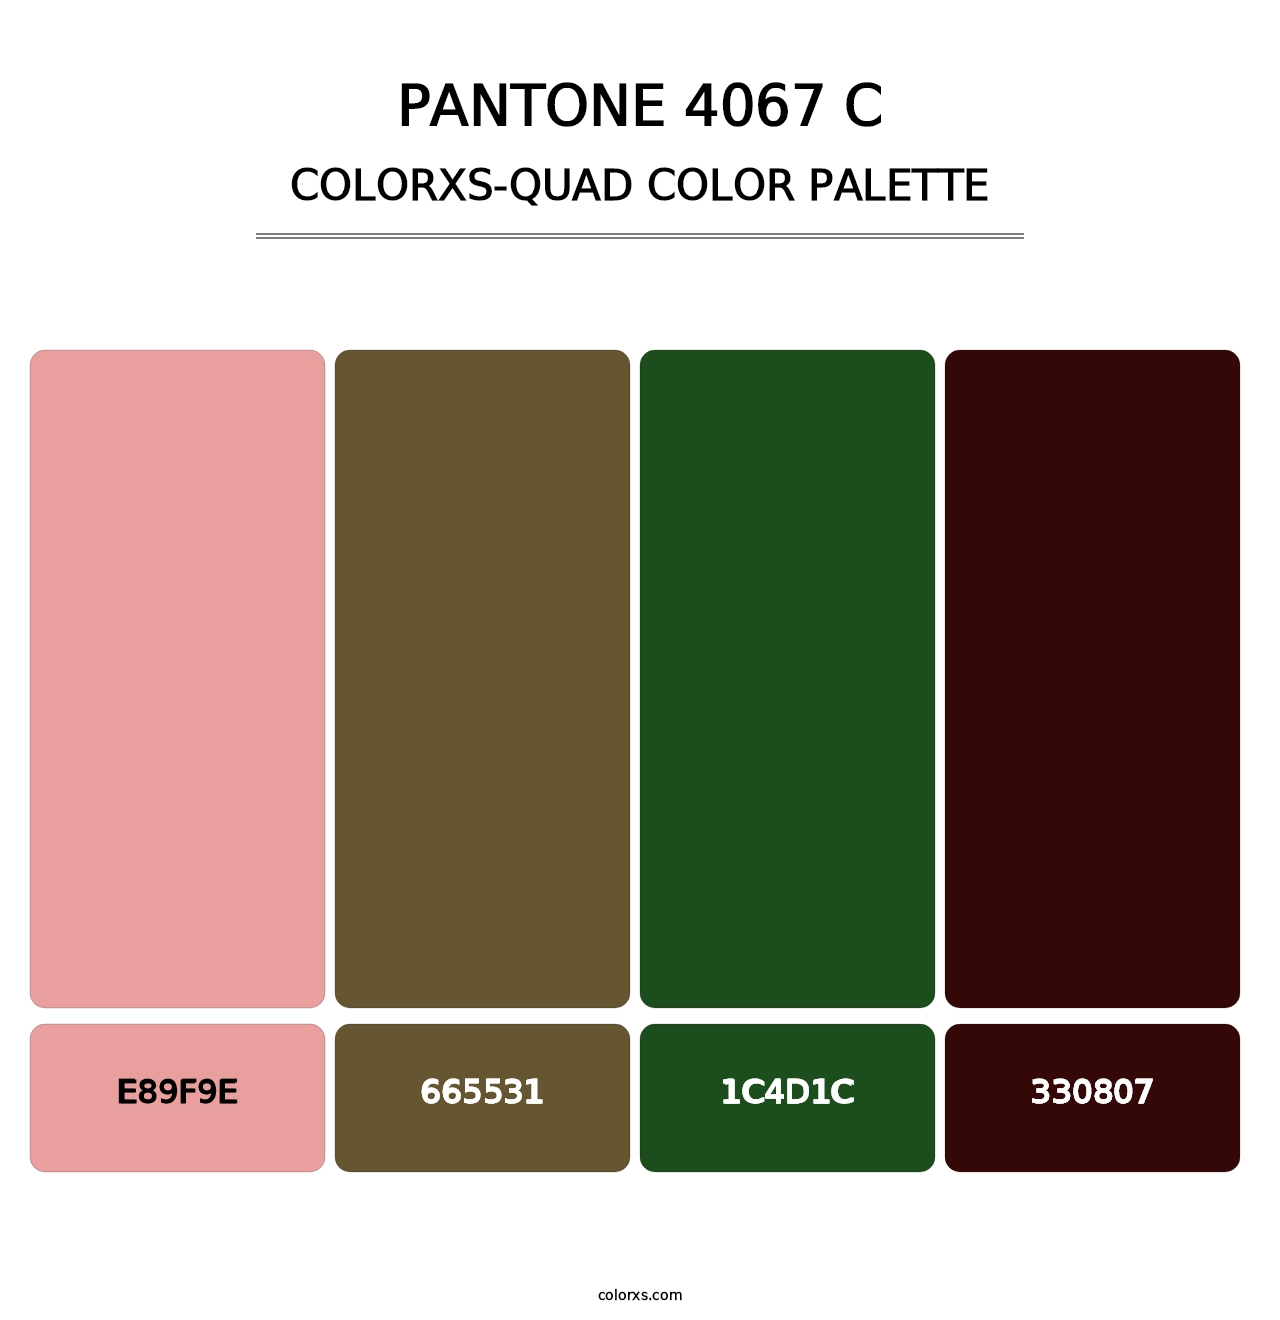 PANTONE 4067 C - Colorxs Quad Palette